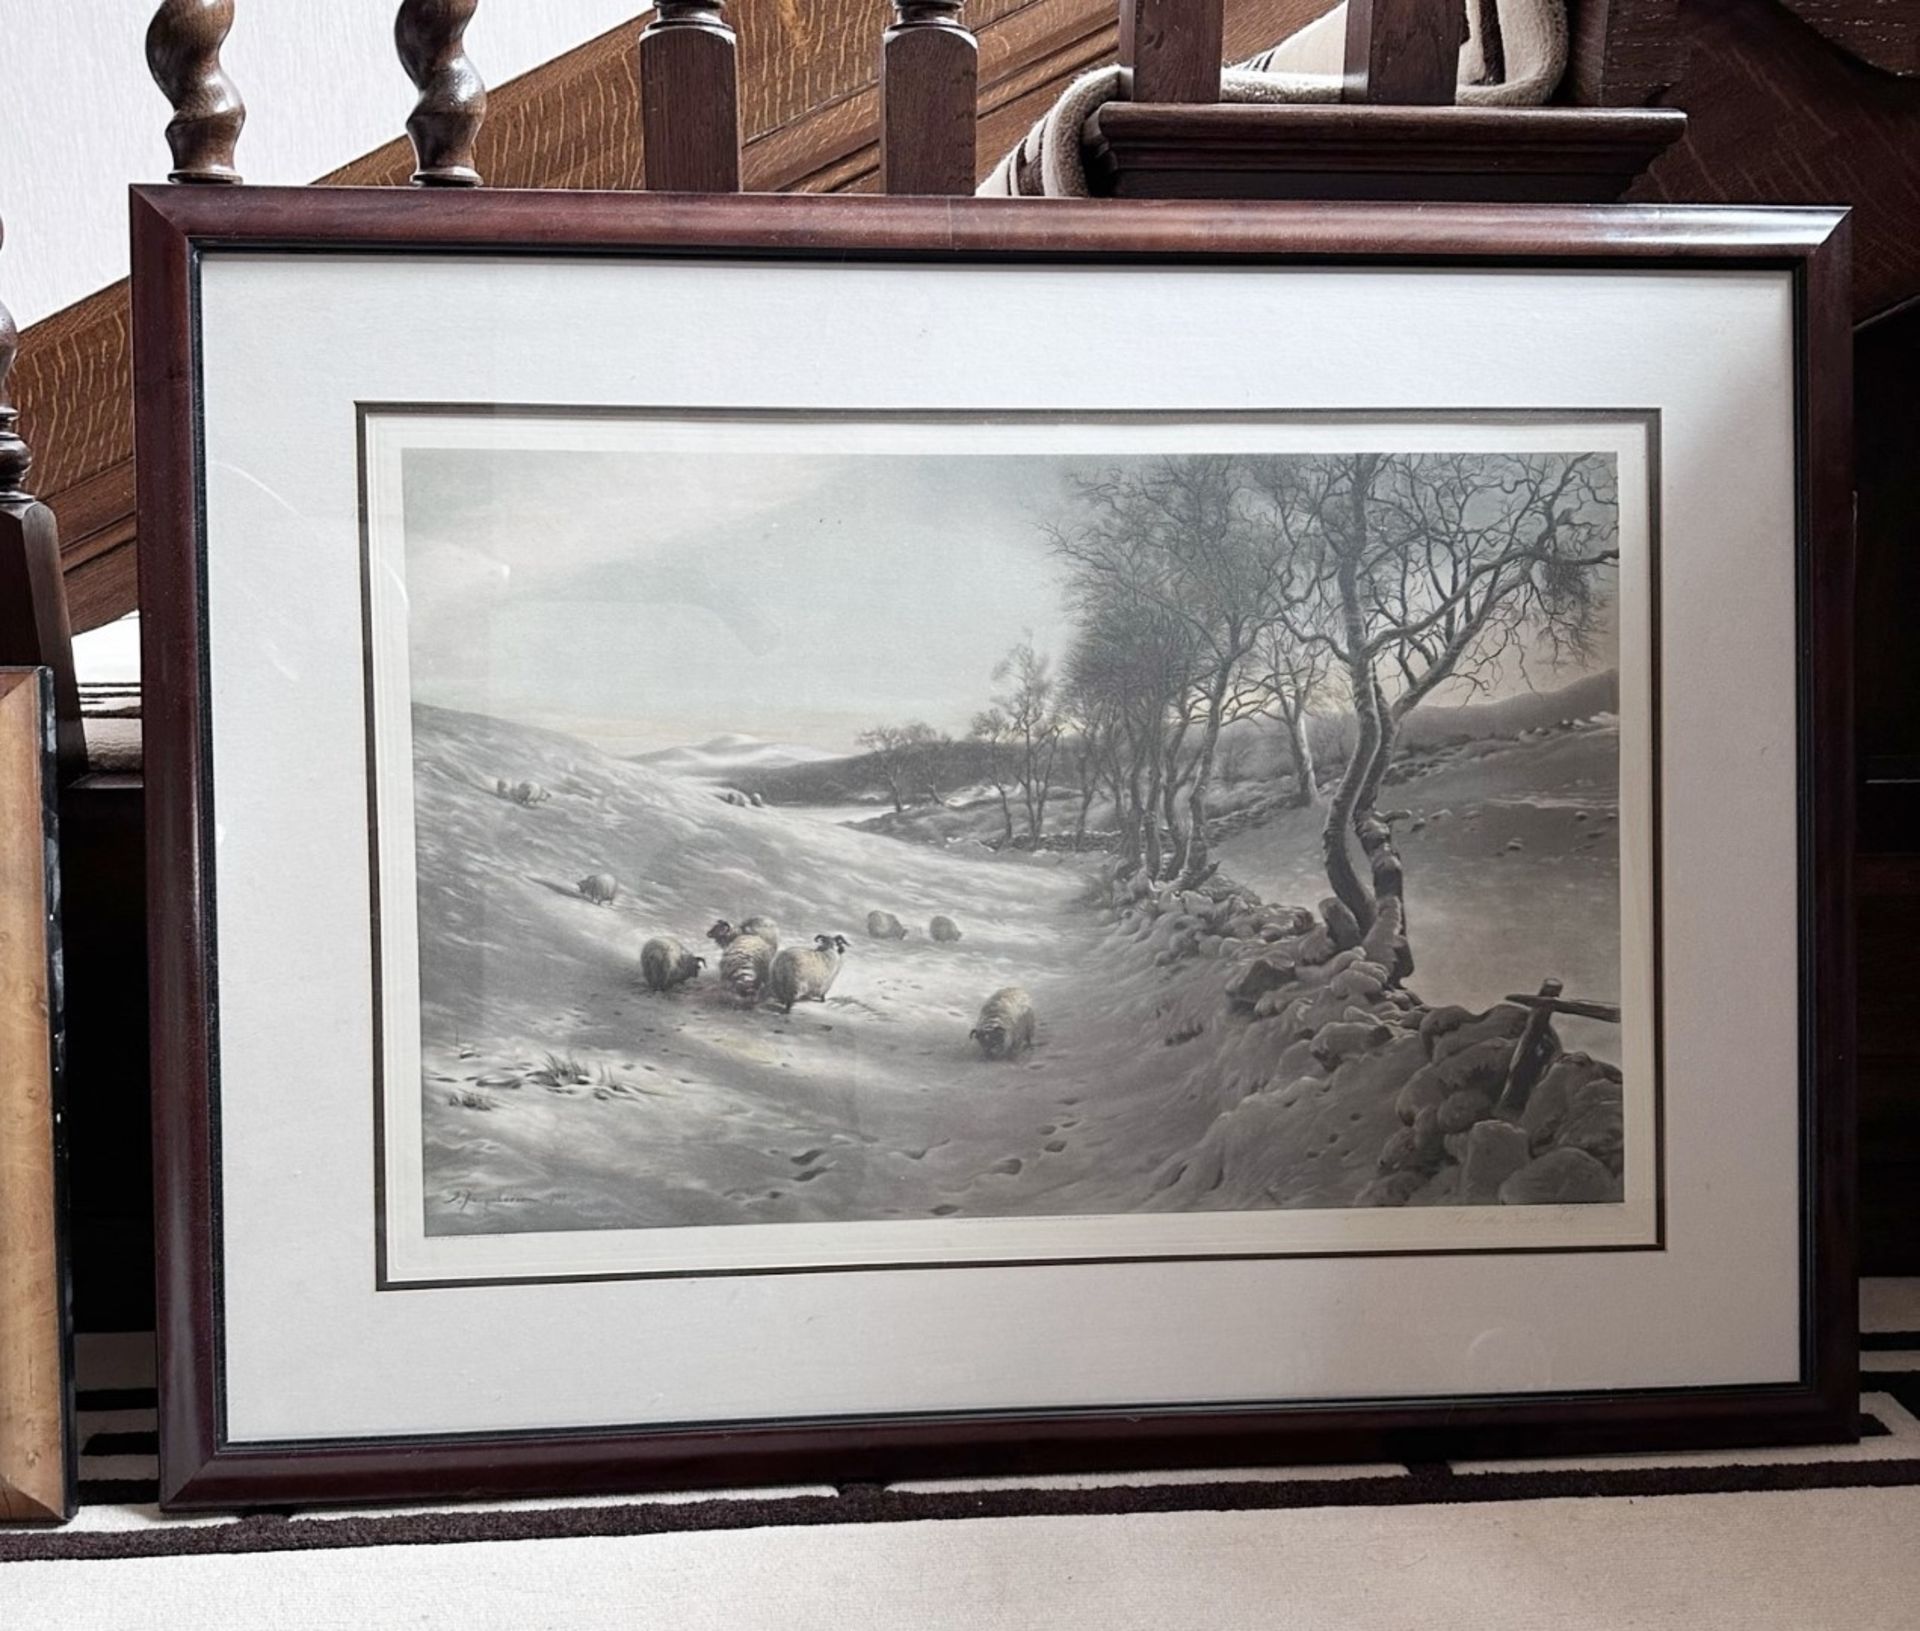 1 x JOSEPH FARQUHARSON (1846-19350) "Through The Crisp Air" Mounted And Framed